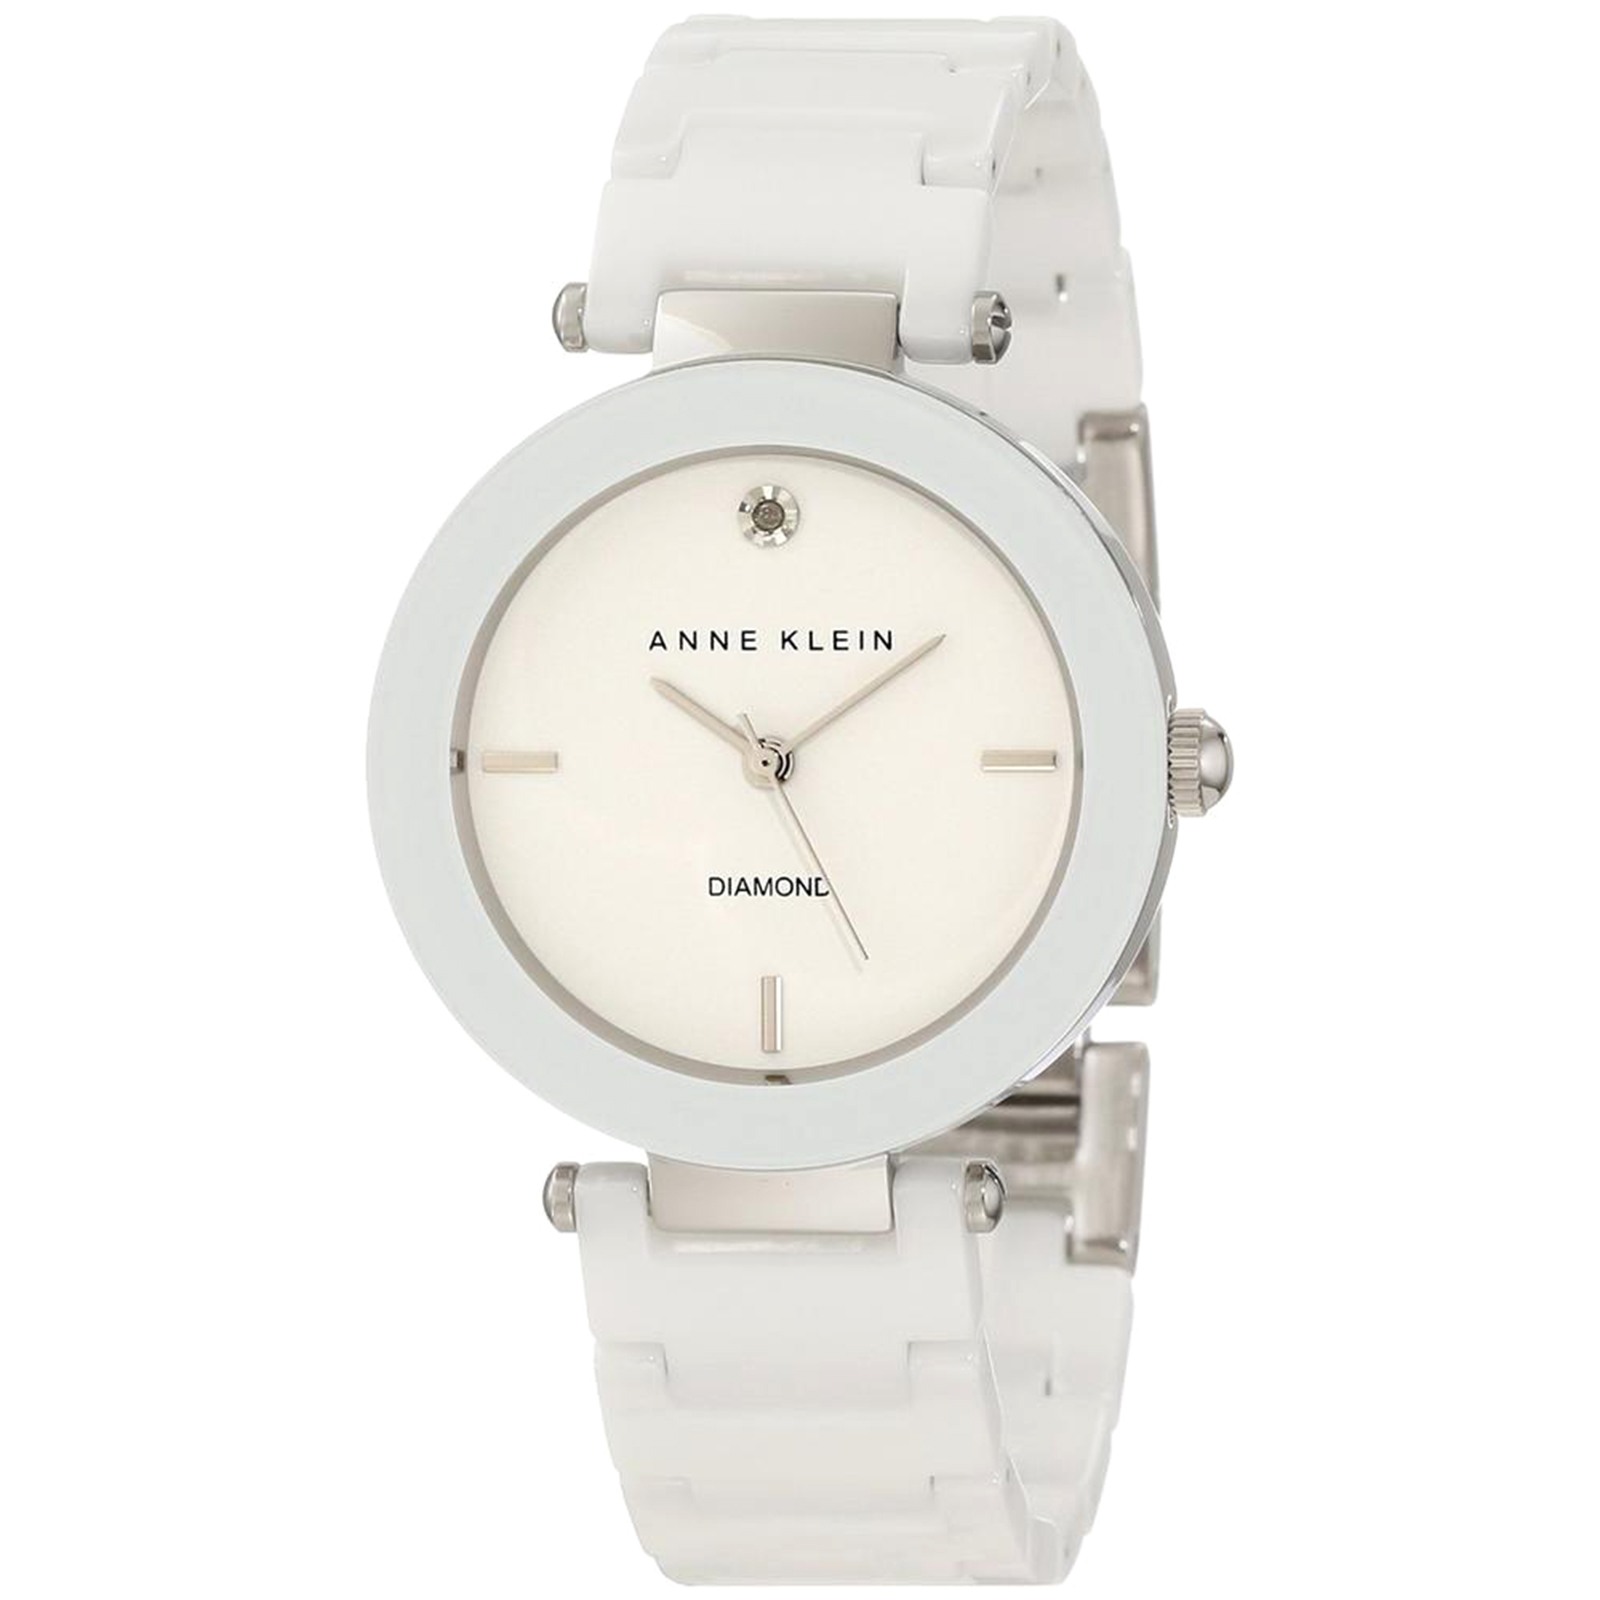 Anne Klein Women's Diamond Accented Ceramic Quartz Watch - White